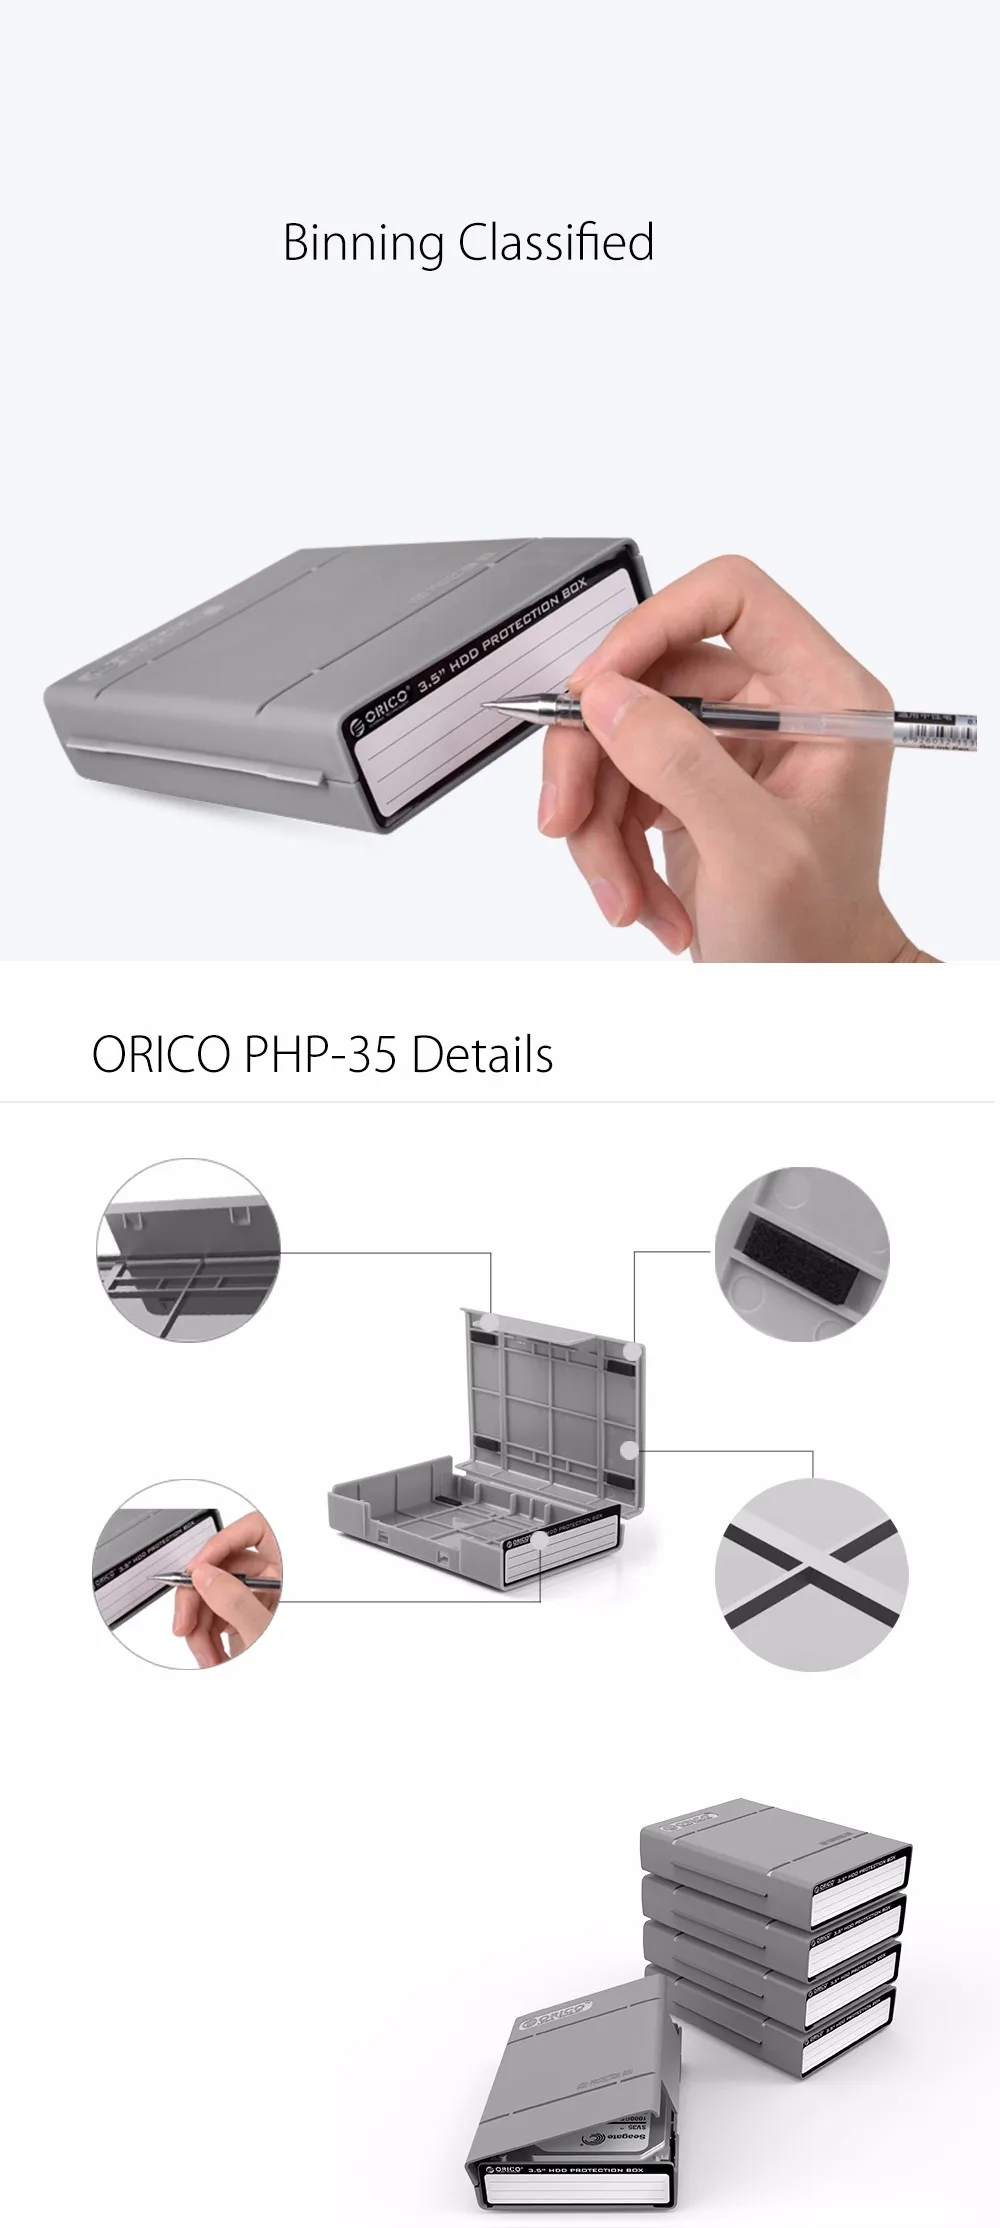 Защитный бокс ORICO PHP-5S 5 Bay 3,5 дюйма/чехол для хранения жесткого диска(HDD) или SDD с водонепроницаемой функцией-5 шт./лот